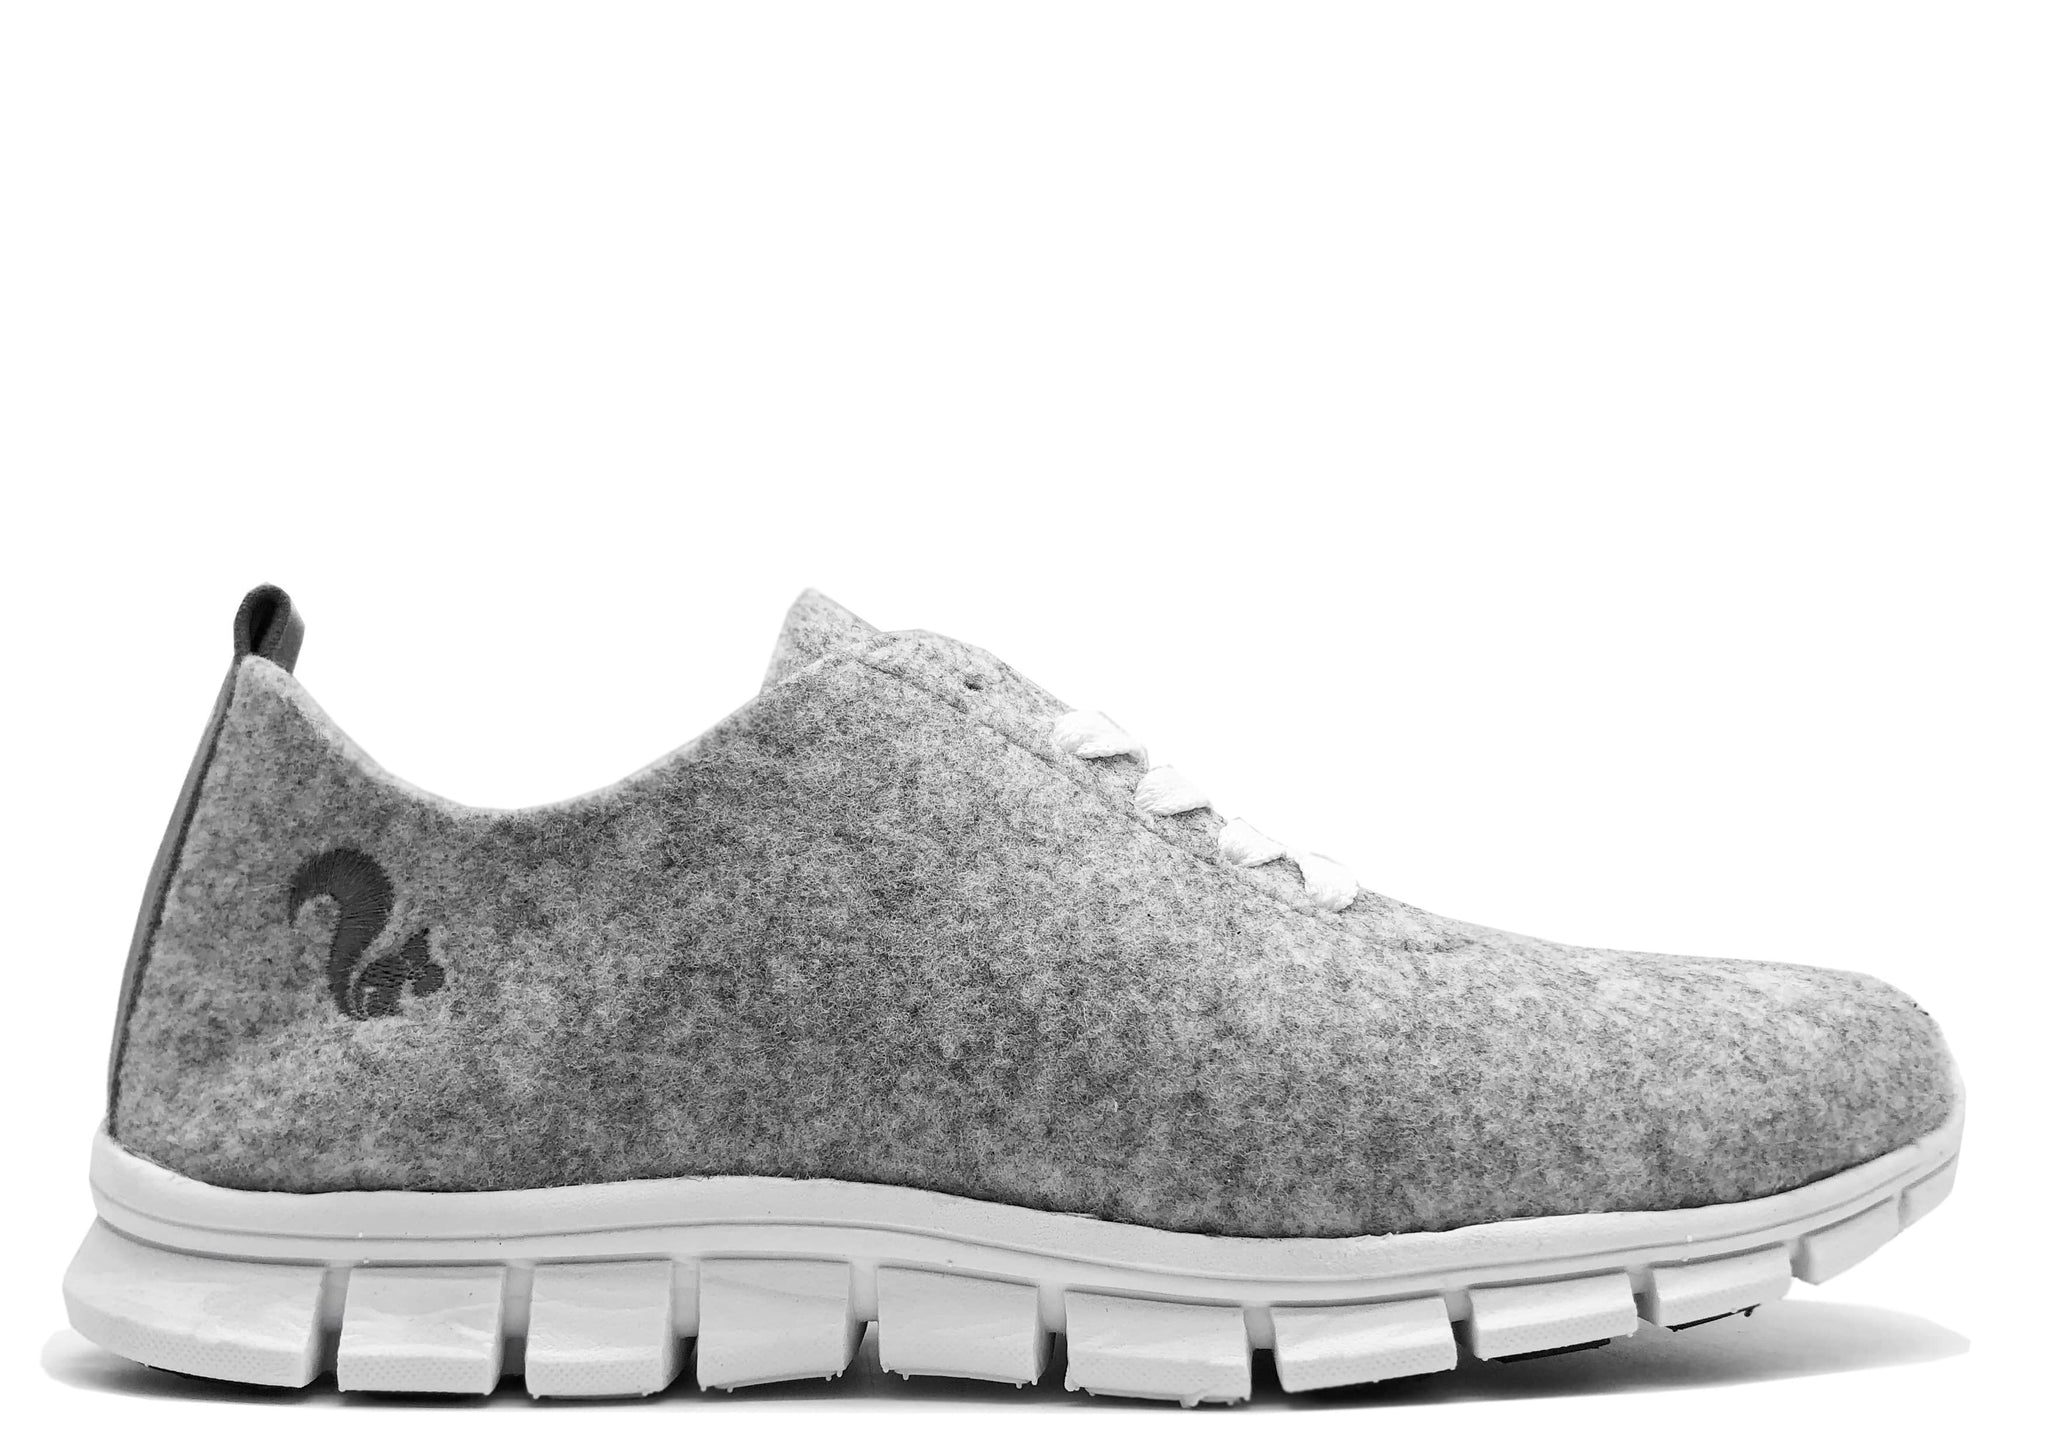 Zapatilla NAT 2 calzado thies ® PET gris piedra | vegano aus reciclar Flaschen moda sostenible moda ética